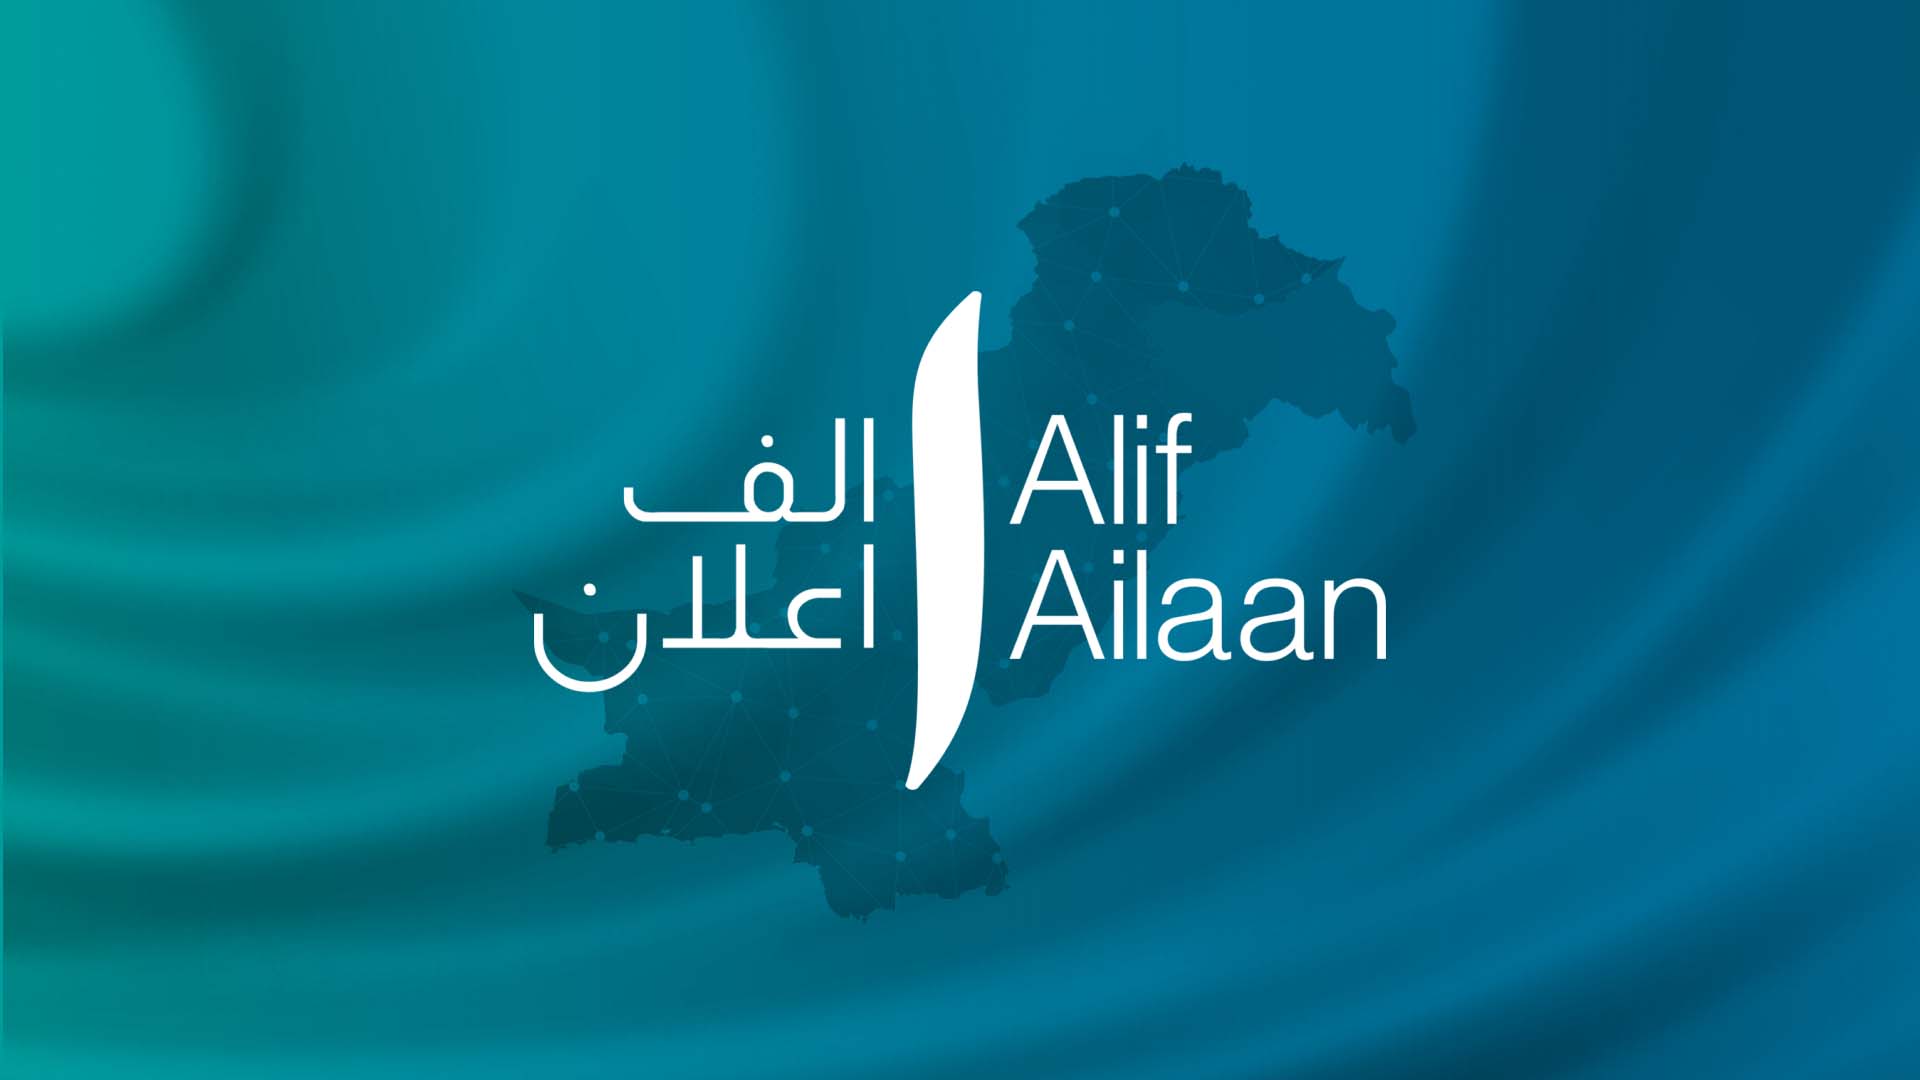 Alif Ailaan